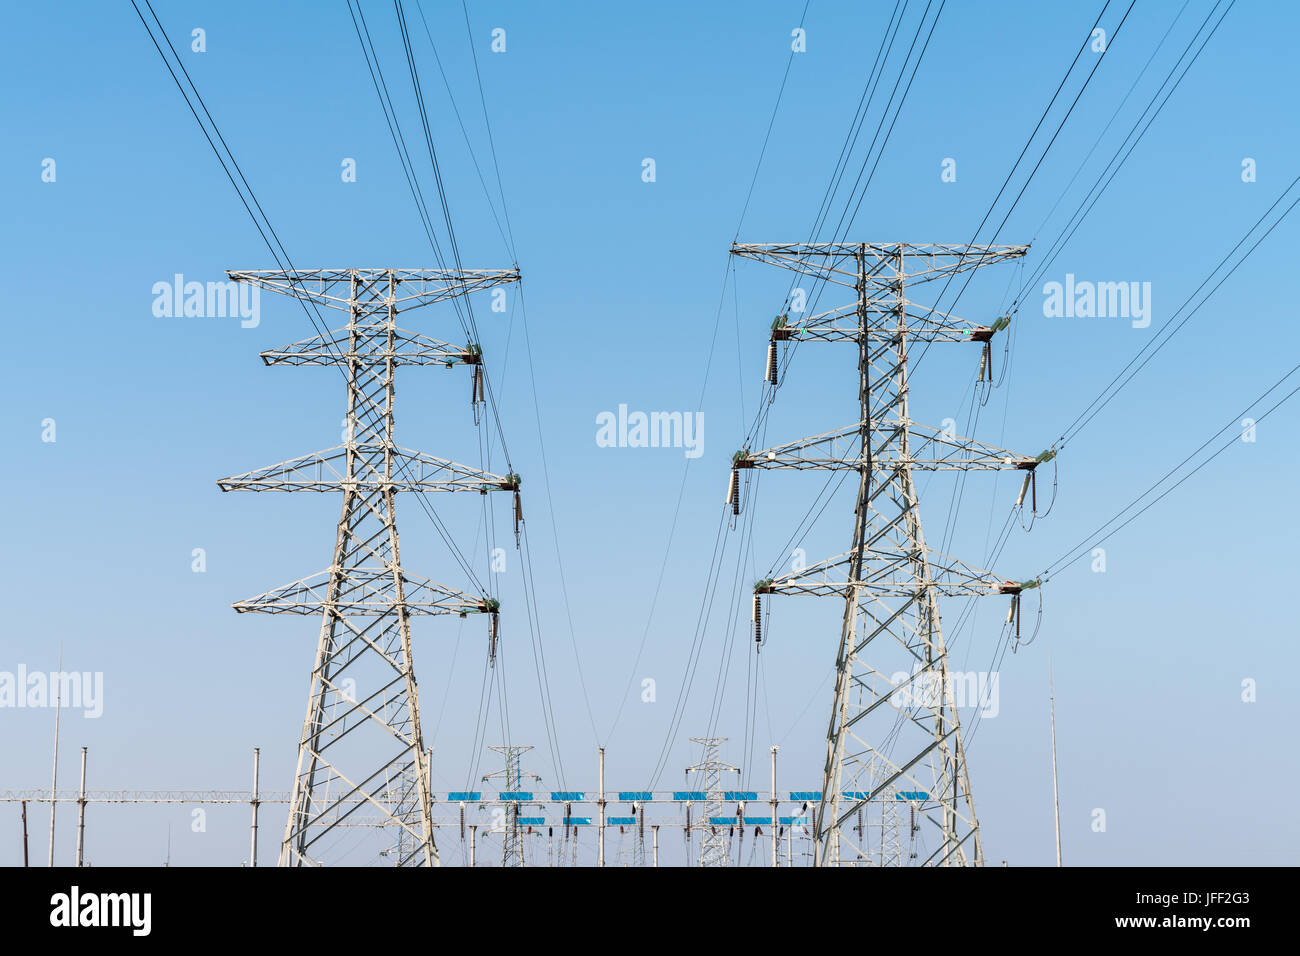 electricity transmission pylon Stock Photo